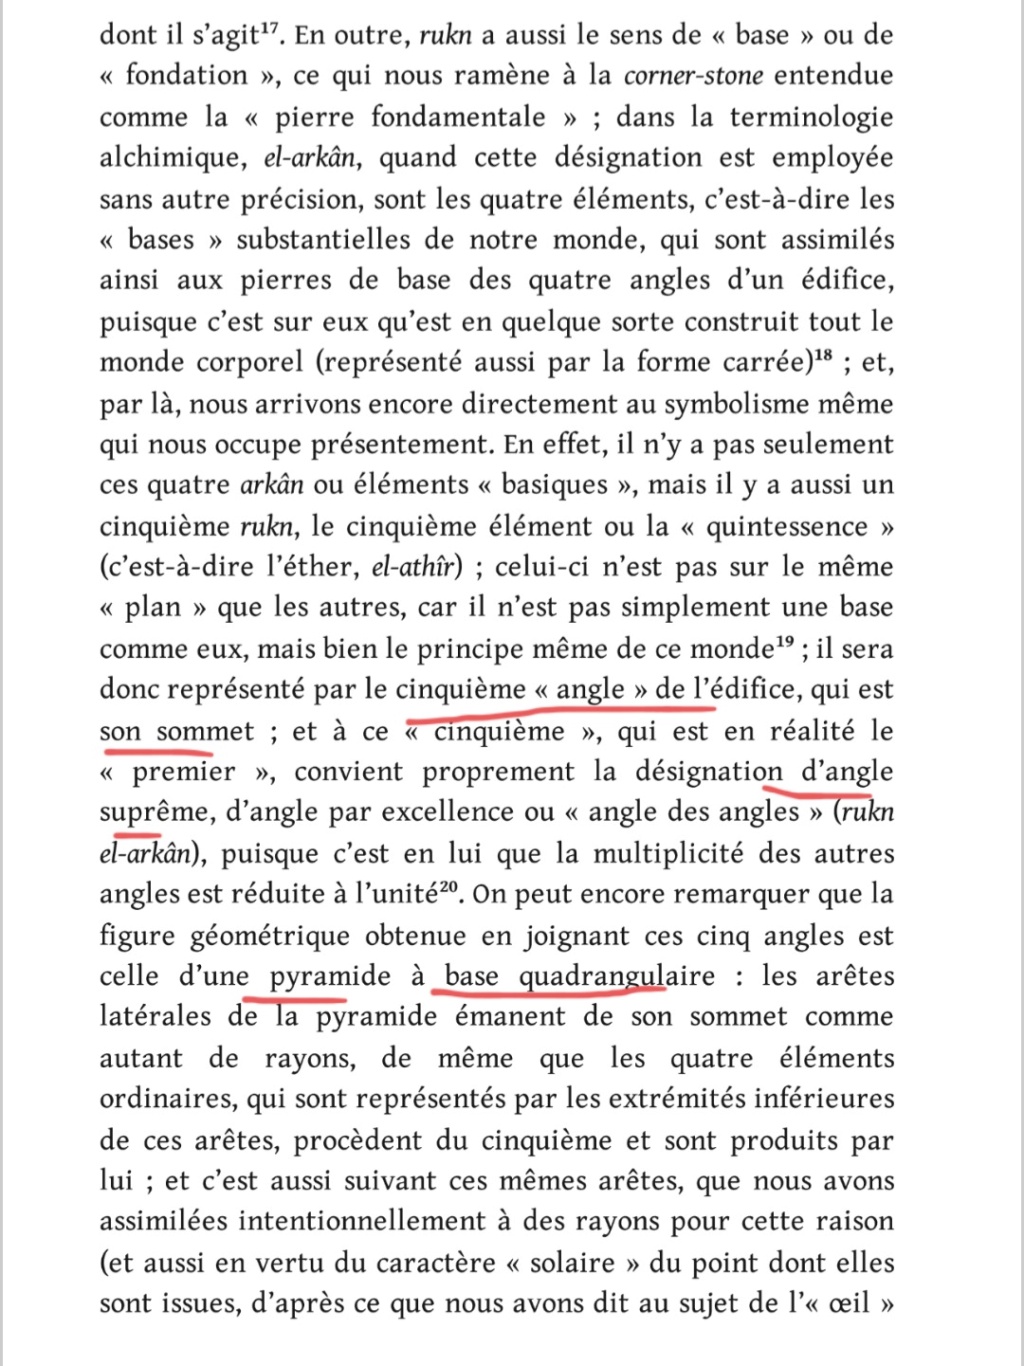 La franc-maçonnerie, la Gnose et le gnosticisme.  - Page 5 Scree530